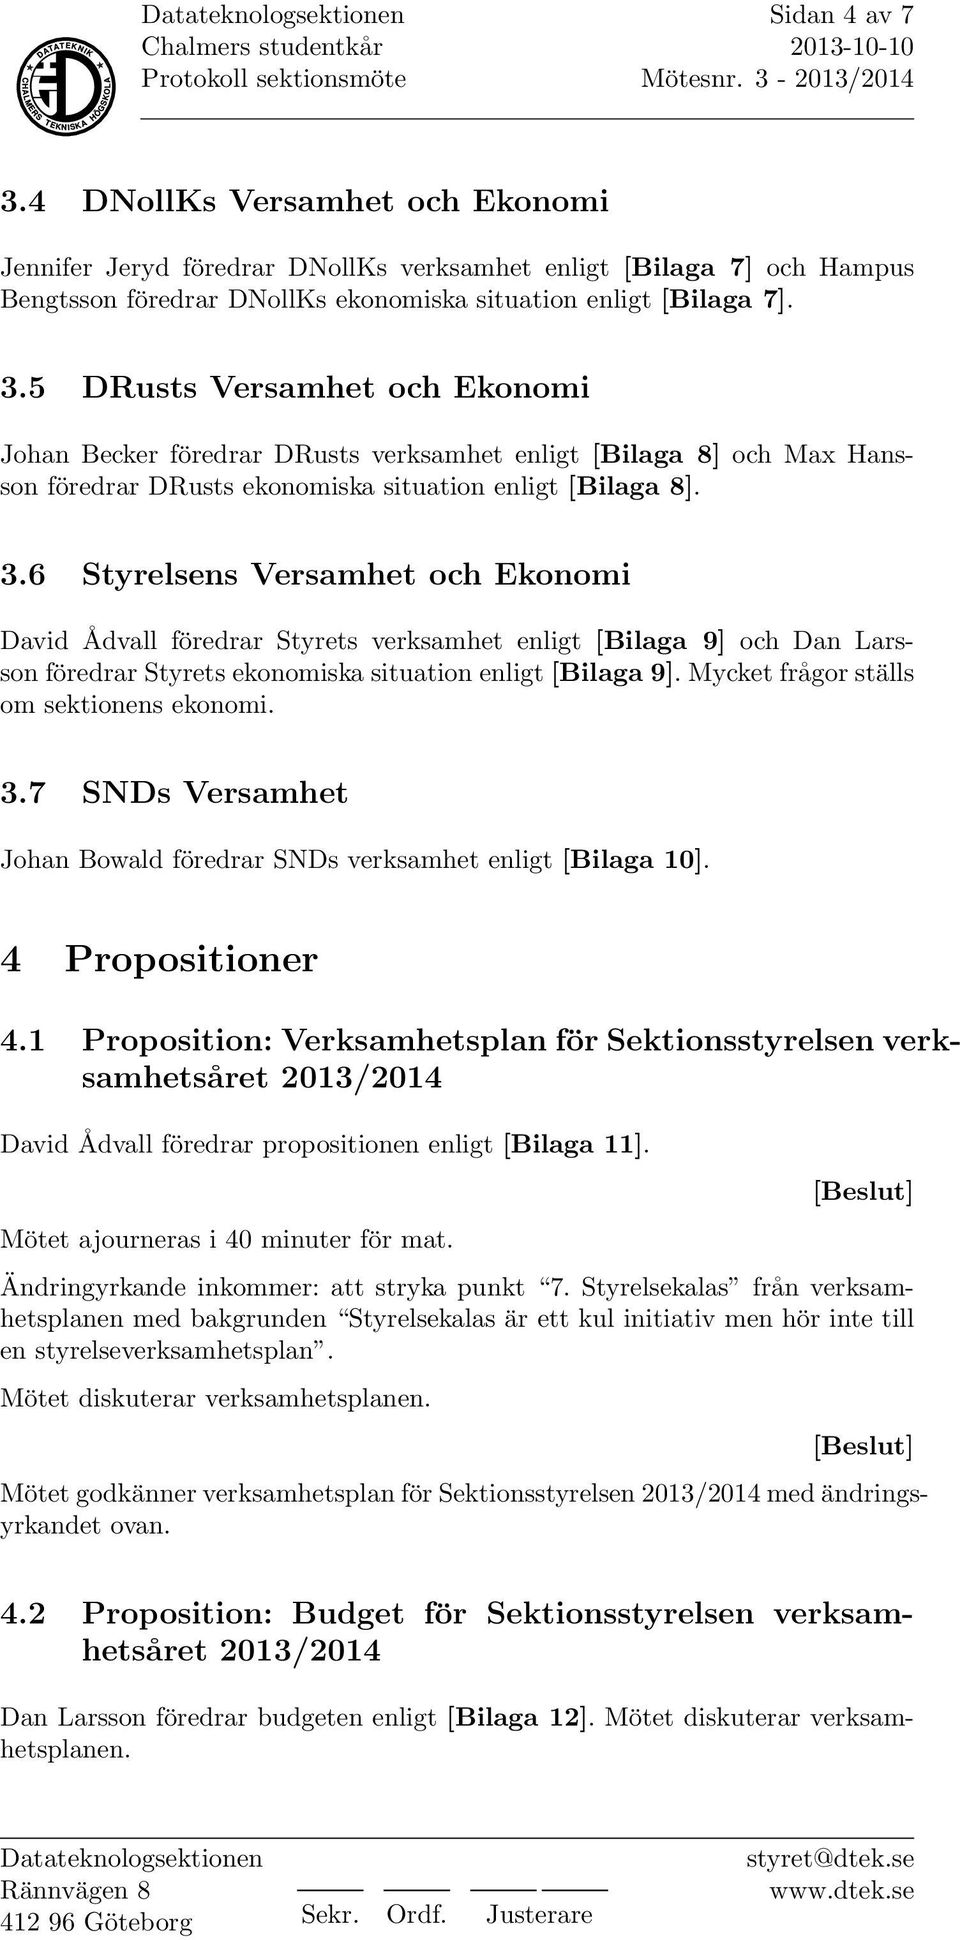 Mycket frågor ställs om sektionens ekonomi. 3.7 SNDs Versamhet Johan Bowald föredrar SNDs verksamhet enligt [Bilaga 10]. 4 Propositioner 4.